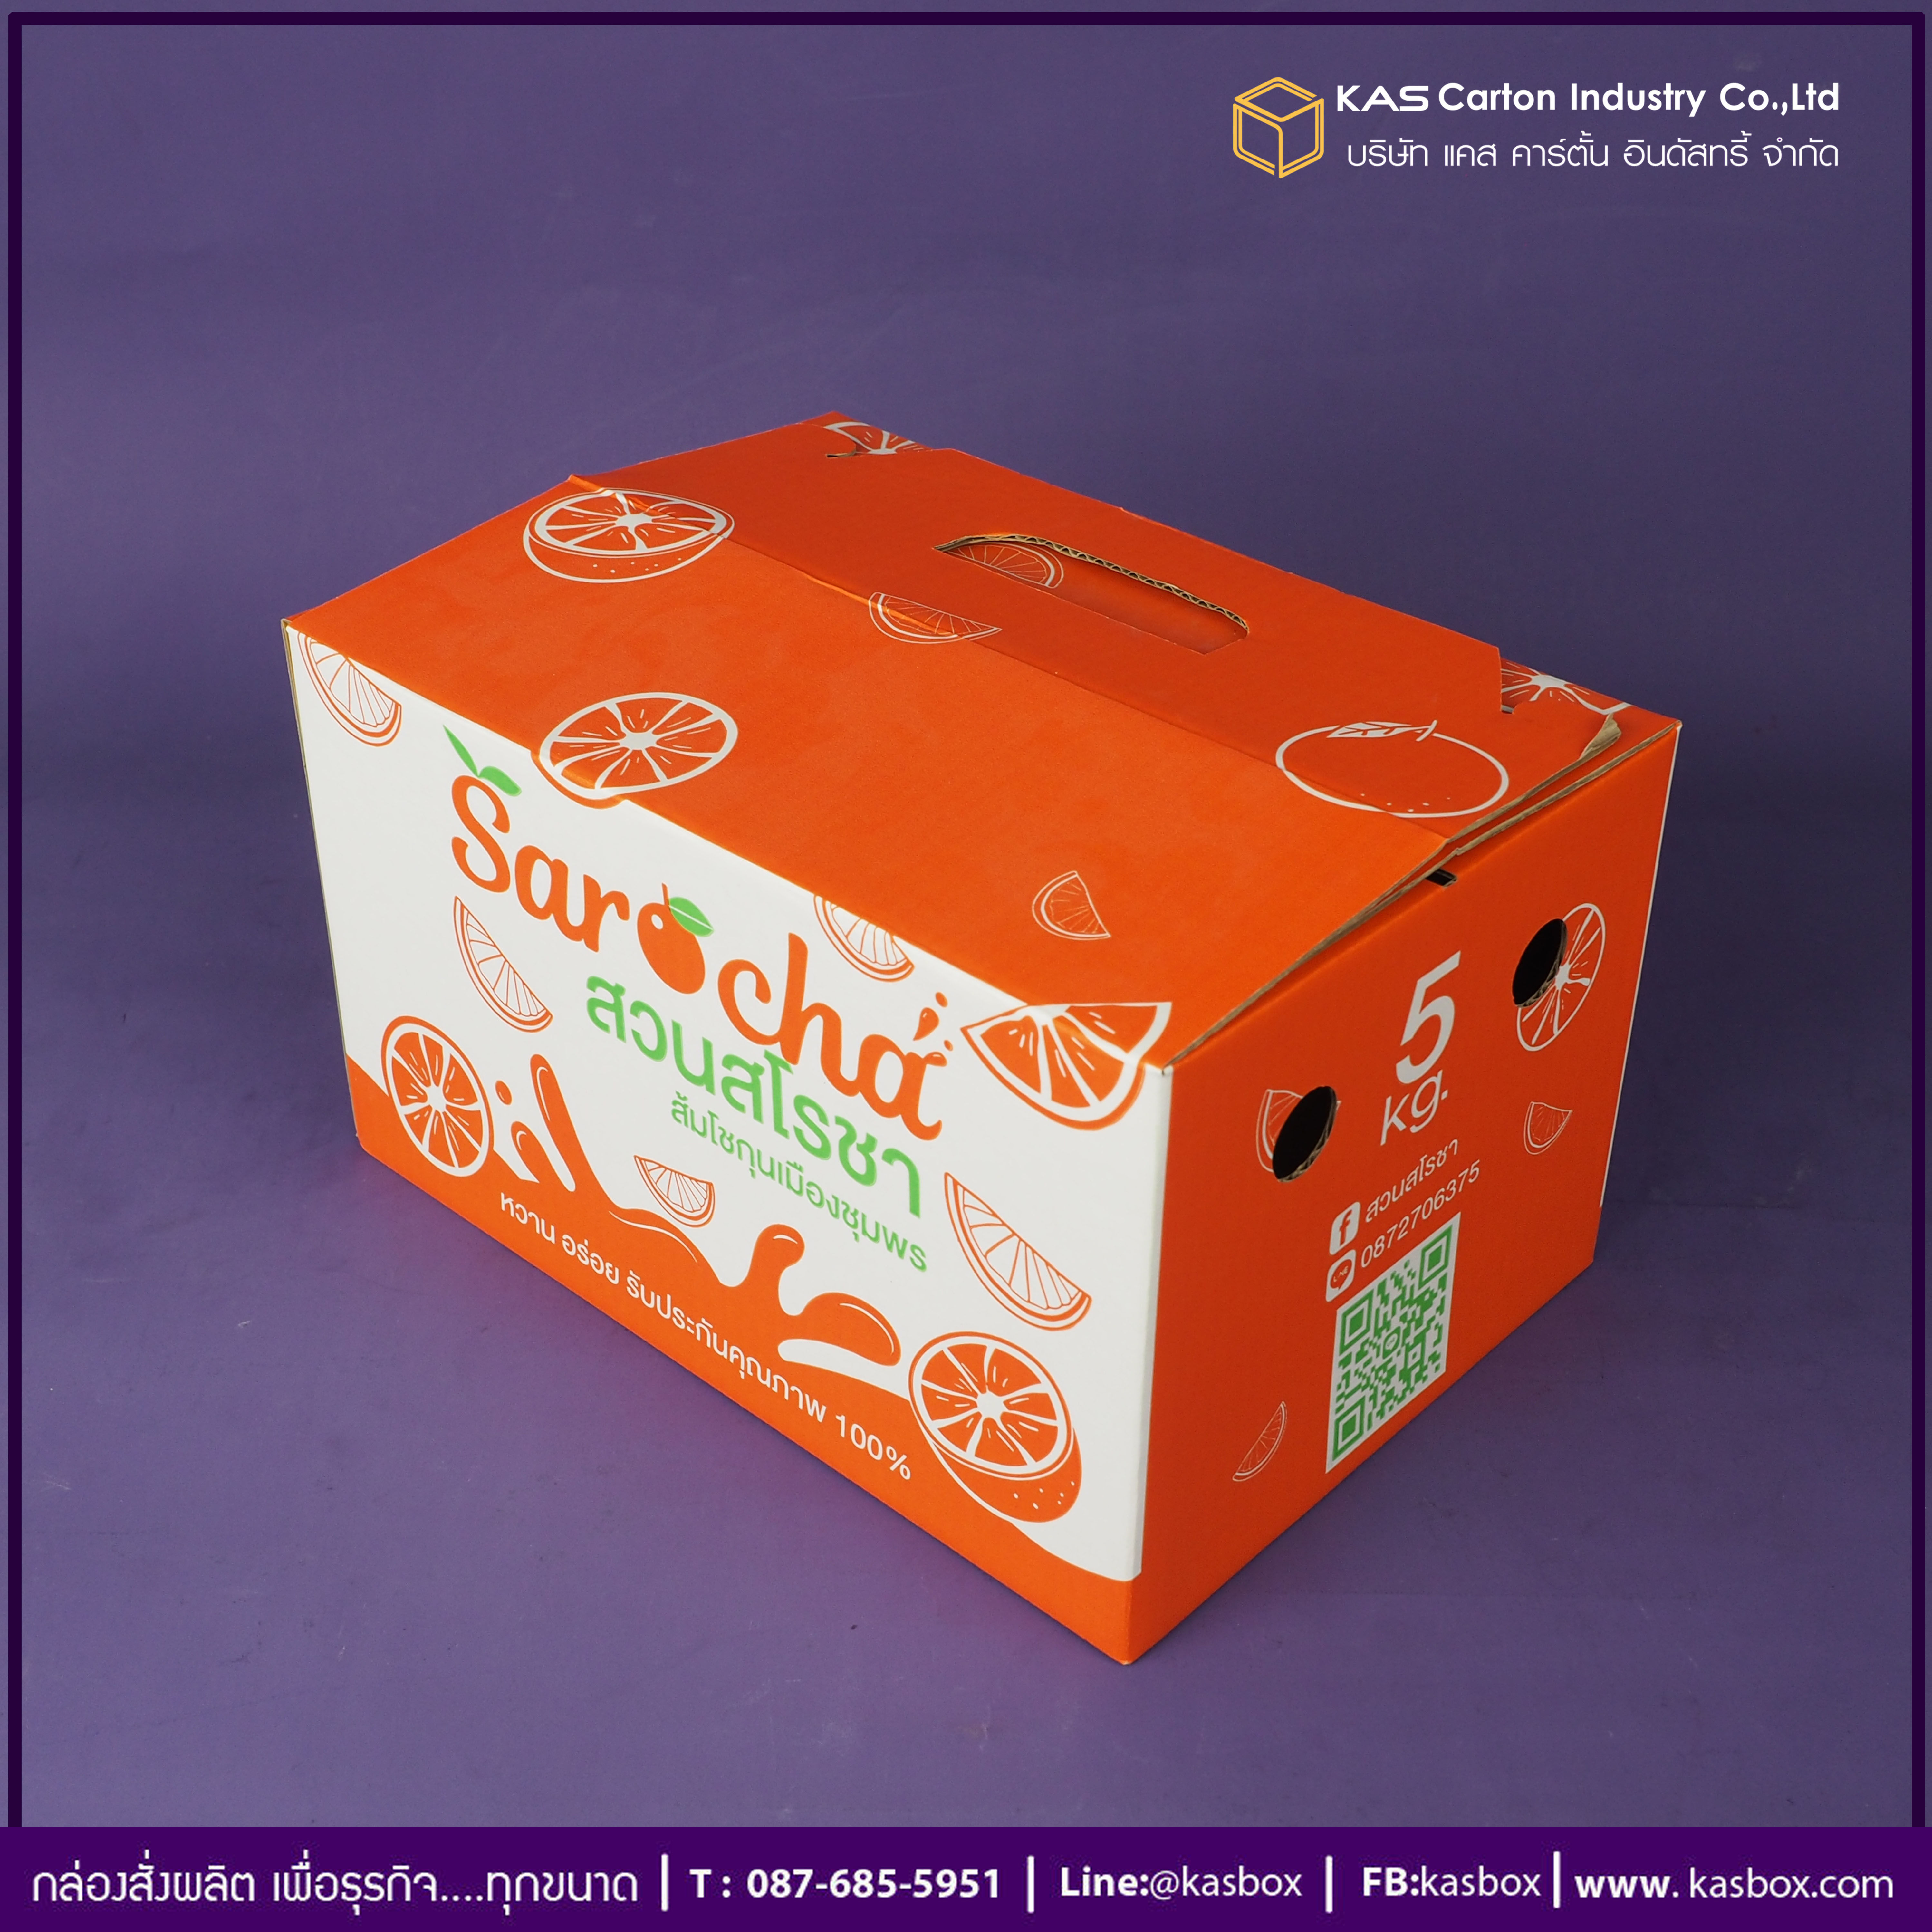 กล่องลูกฟูก สำเร็จรูป และ สั่งผลิต ตามความต้องการลูกค้า กล่องลูกฟูก SME กล่องกระดาษลูกฟูก กล่องผลไม้ บรรจุส้ม Sarocha